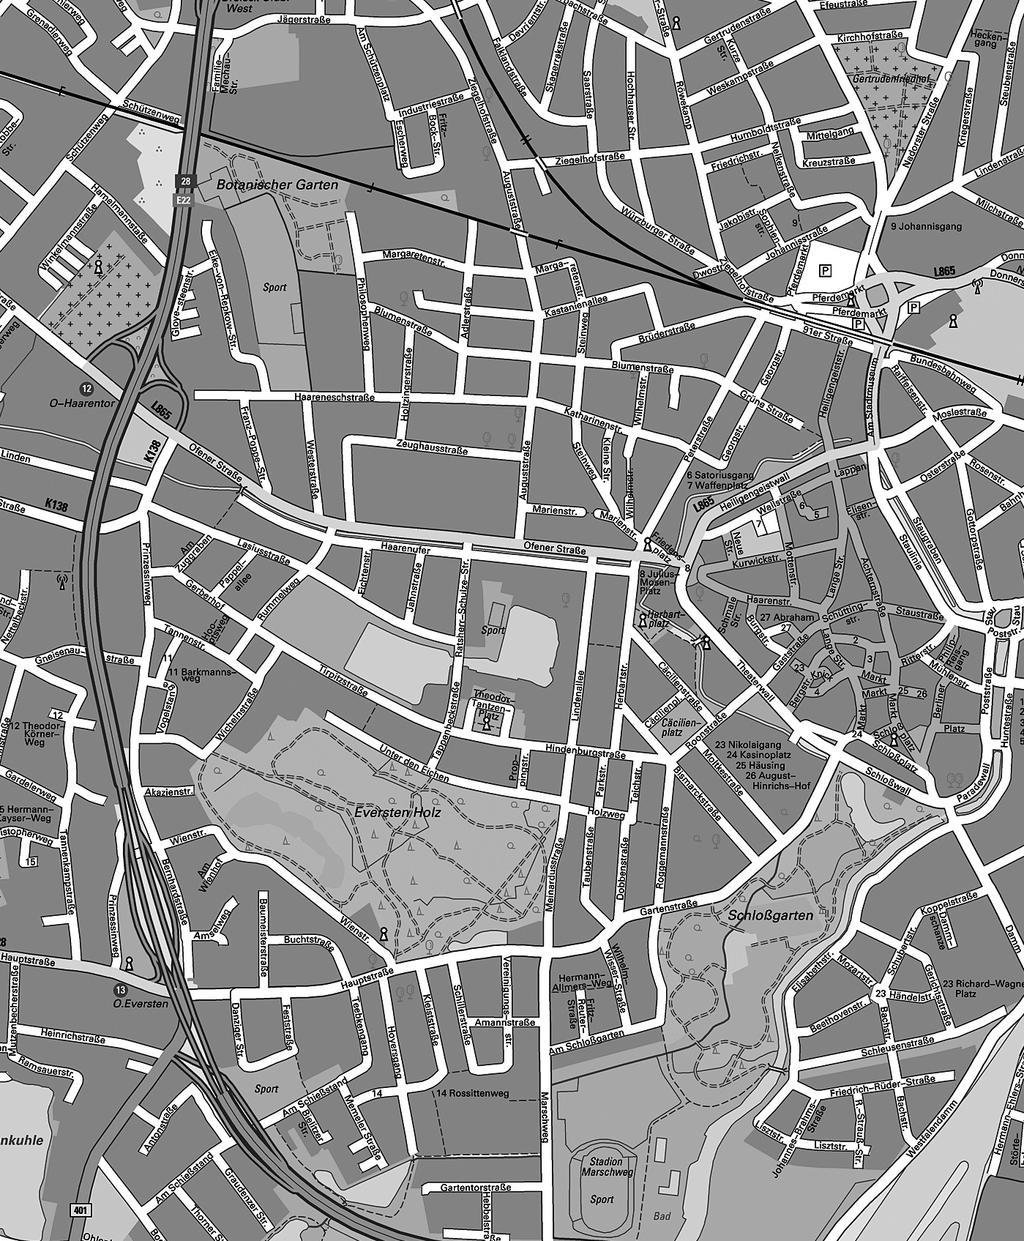 DROSERA 2008 Abb. 1: Lage der Untersuchungsgebiete im zentralen Stadtbereich Oldenburgs (Vervielfältigungs - erlaubnis für die Digitale Straßenkarte 1:10.